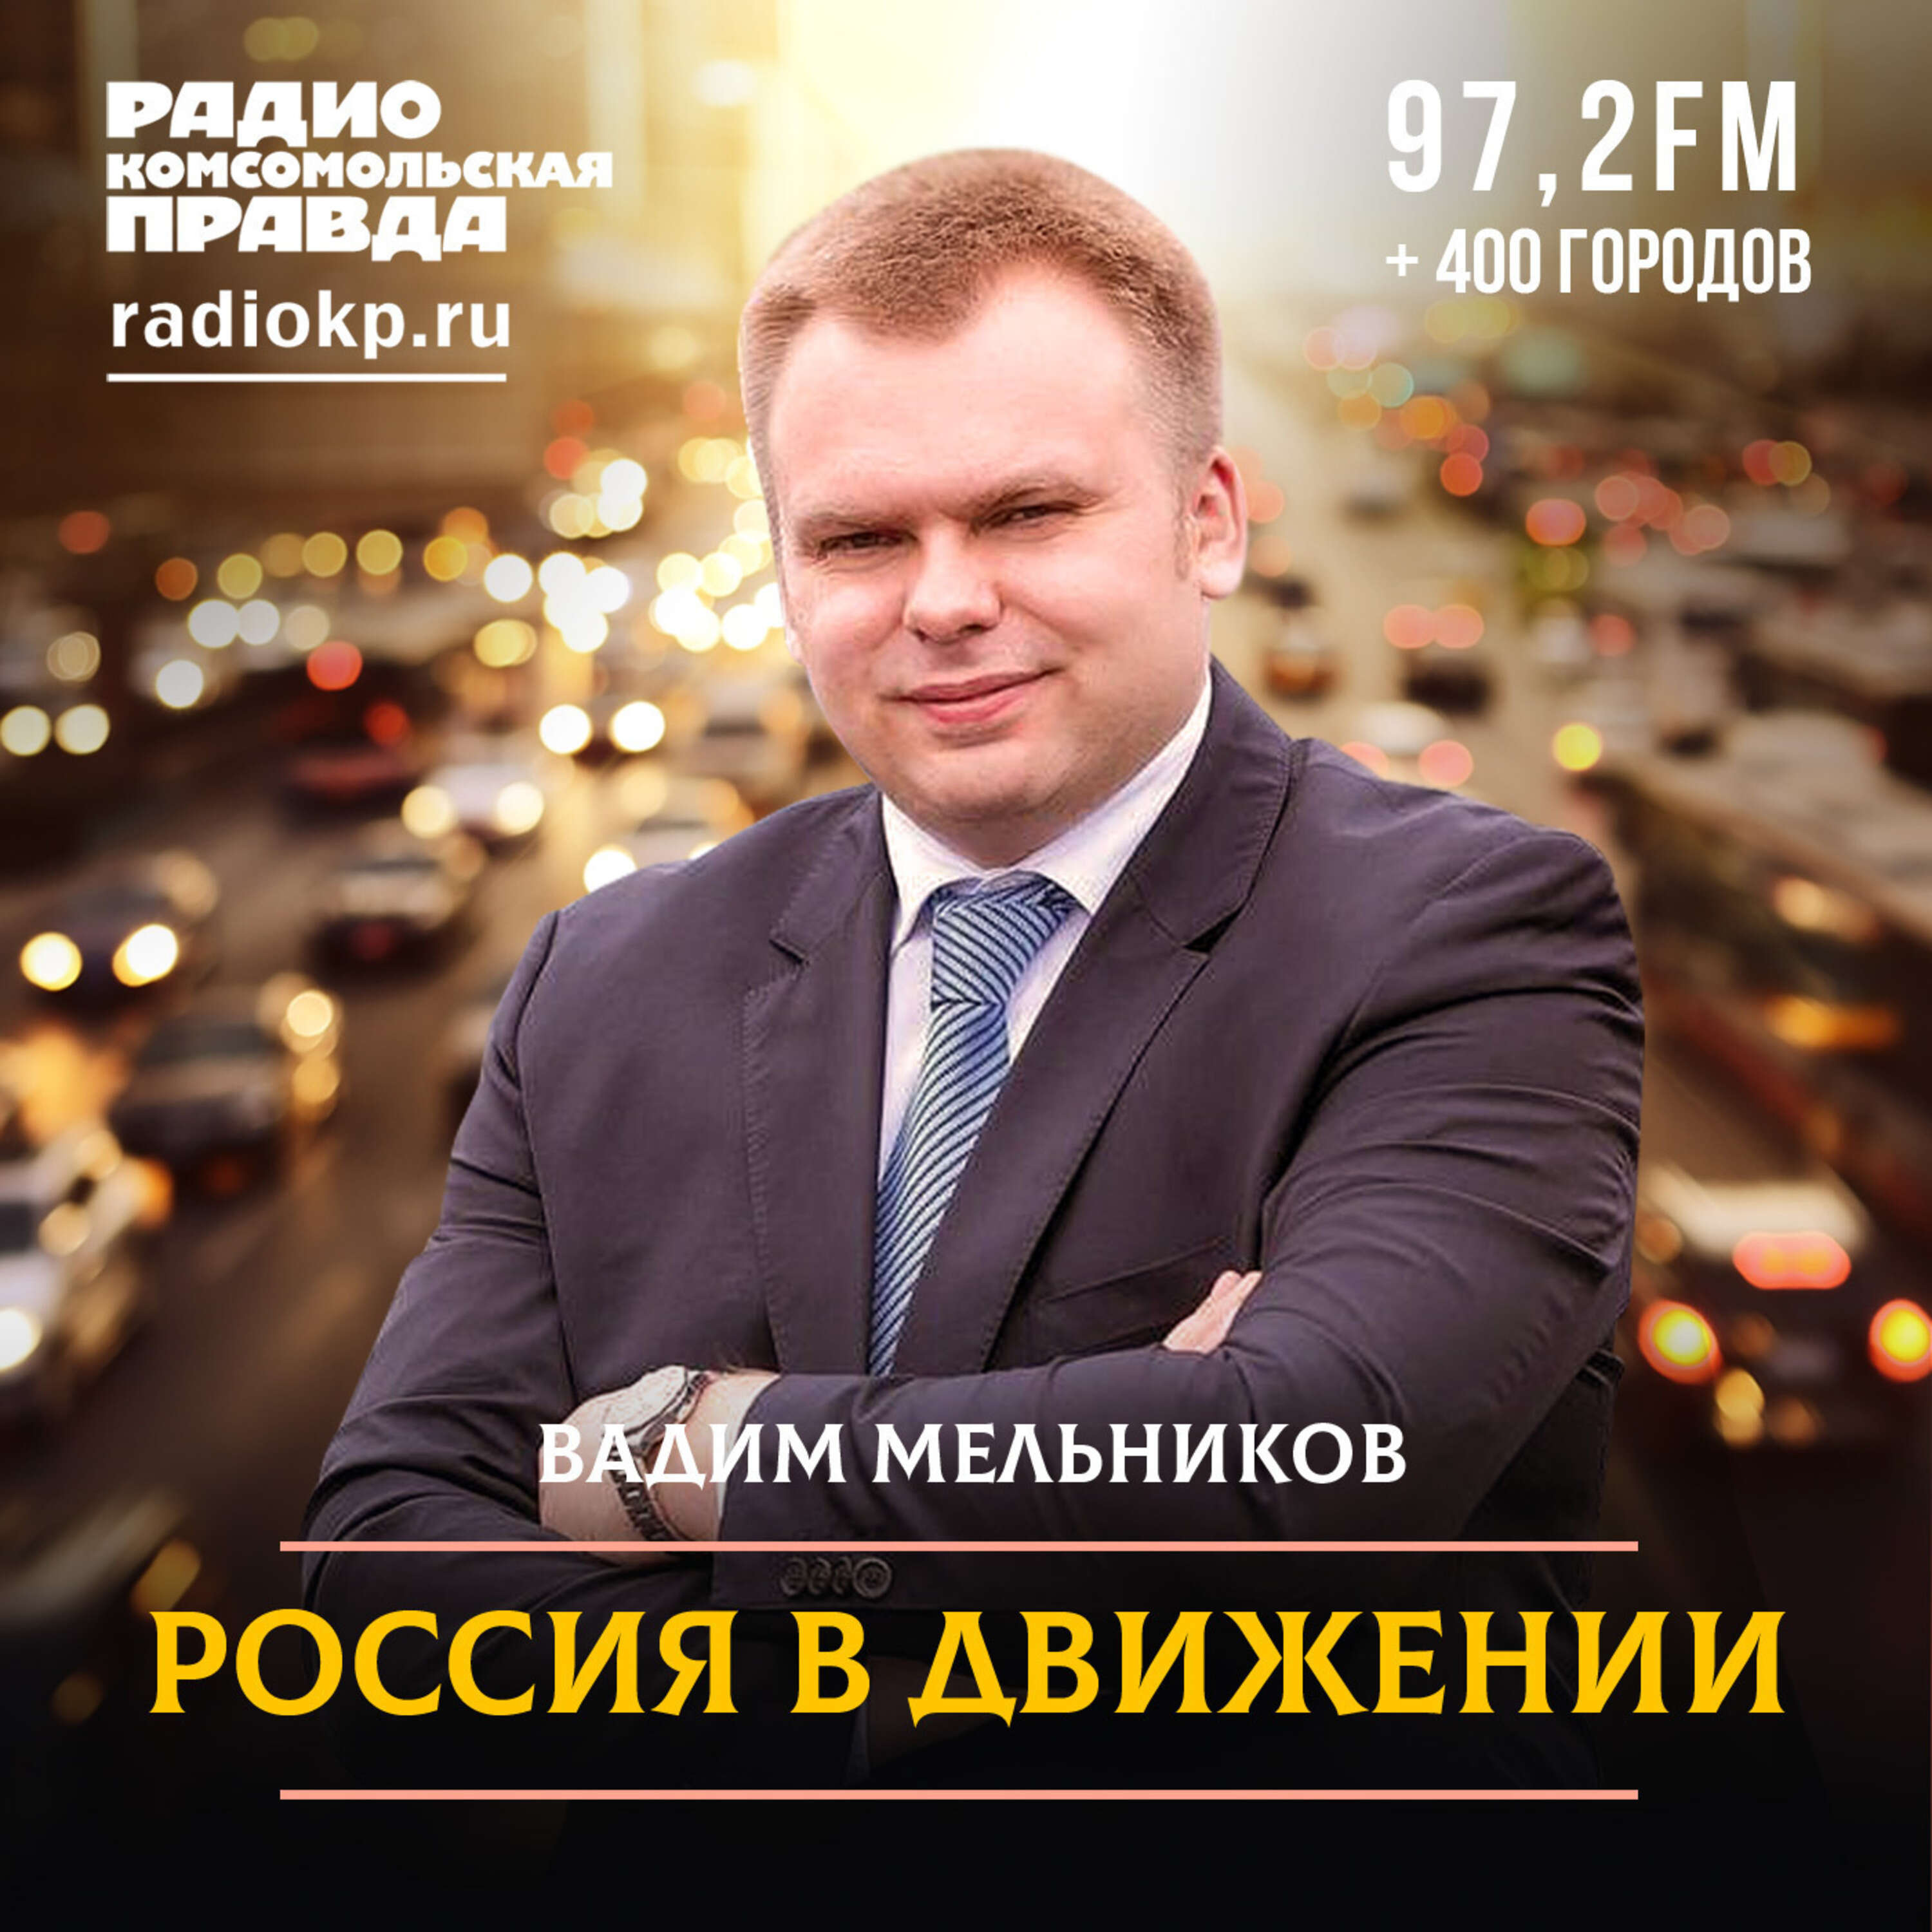 Россия в движении:Радио «Комсомольская правда»